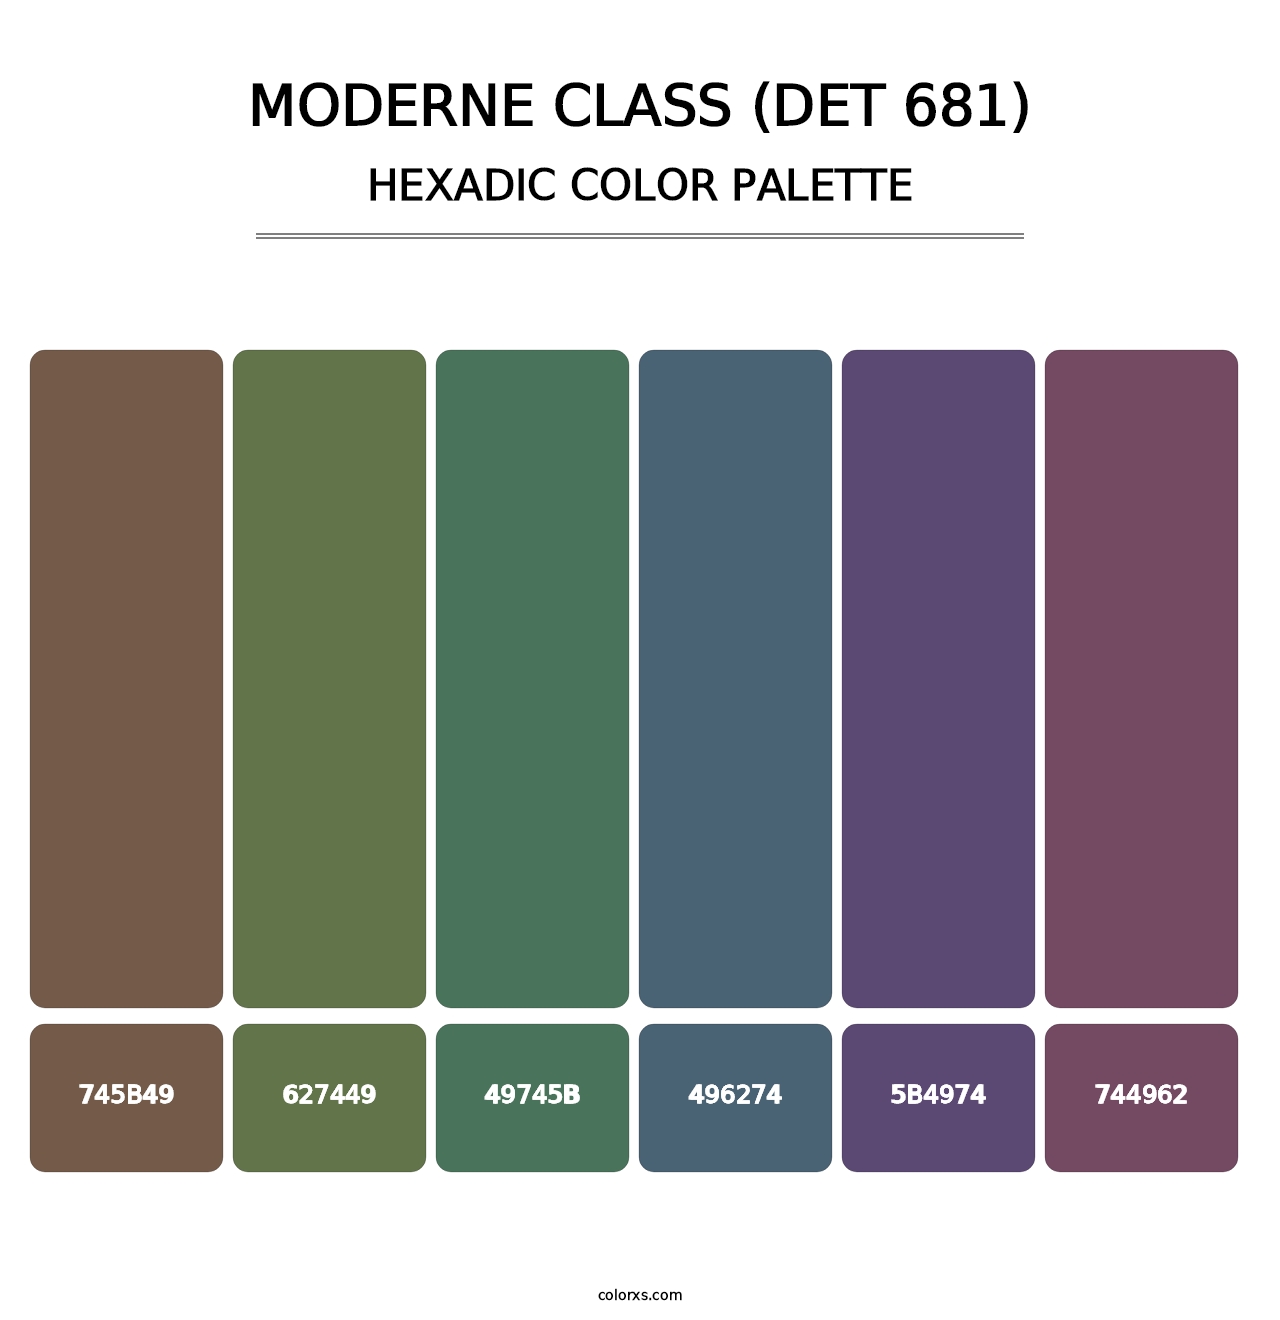 Moderne Class (DET 681) - Hexadic Color Palette